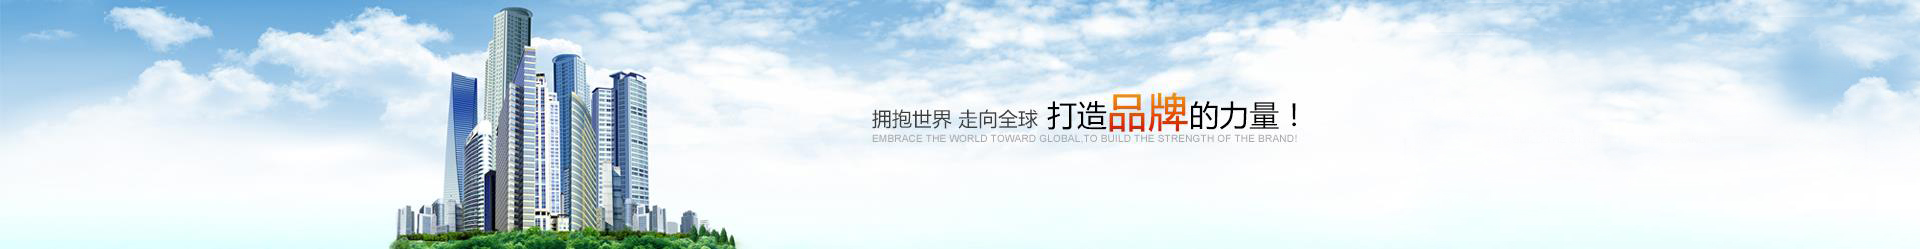 尊龙凯时-人生就是搏!「CHINA」官方网站_image9492